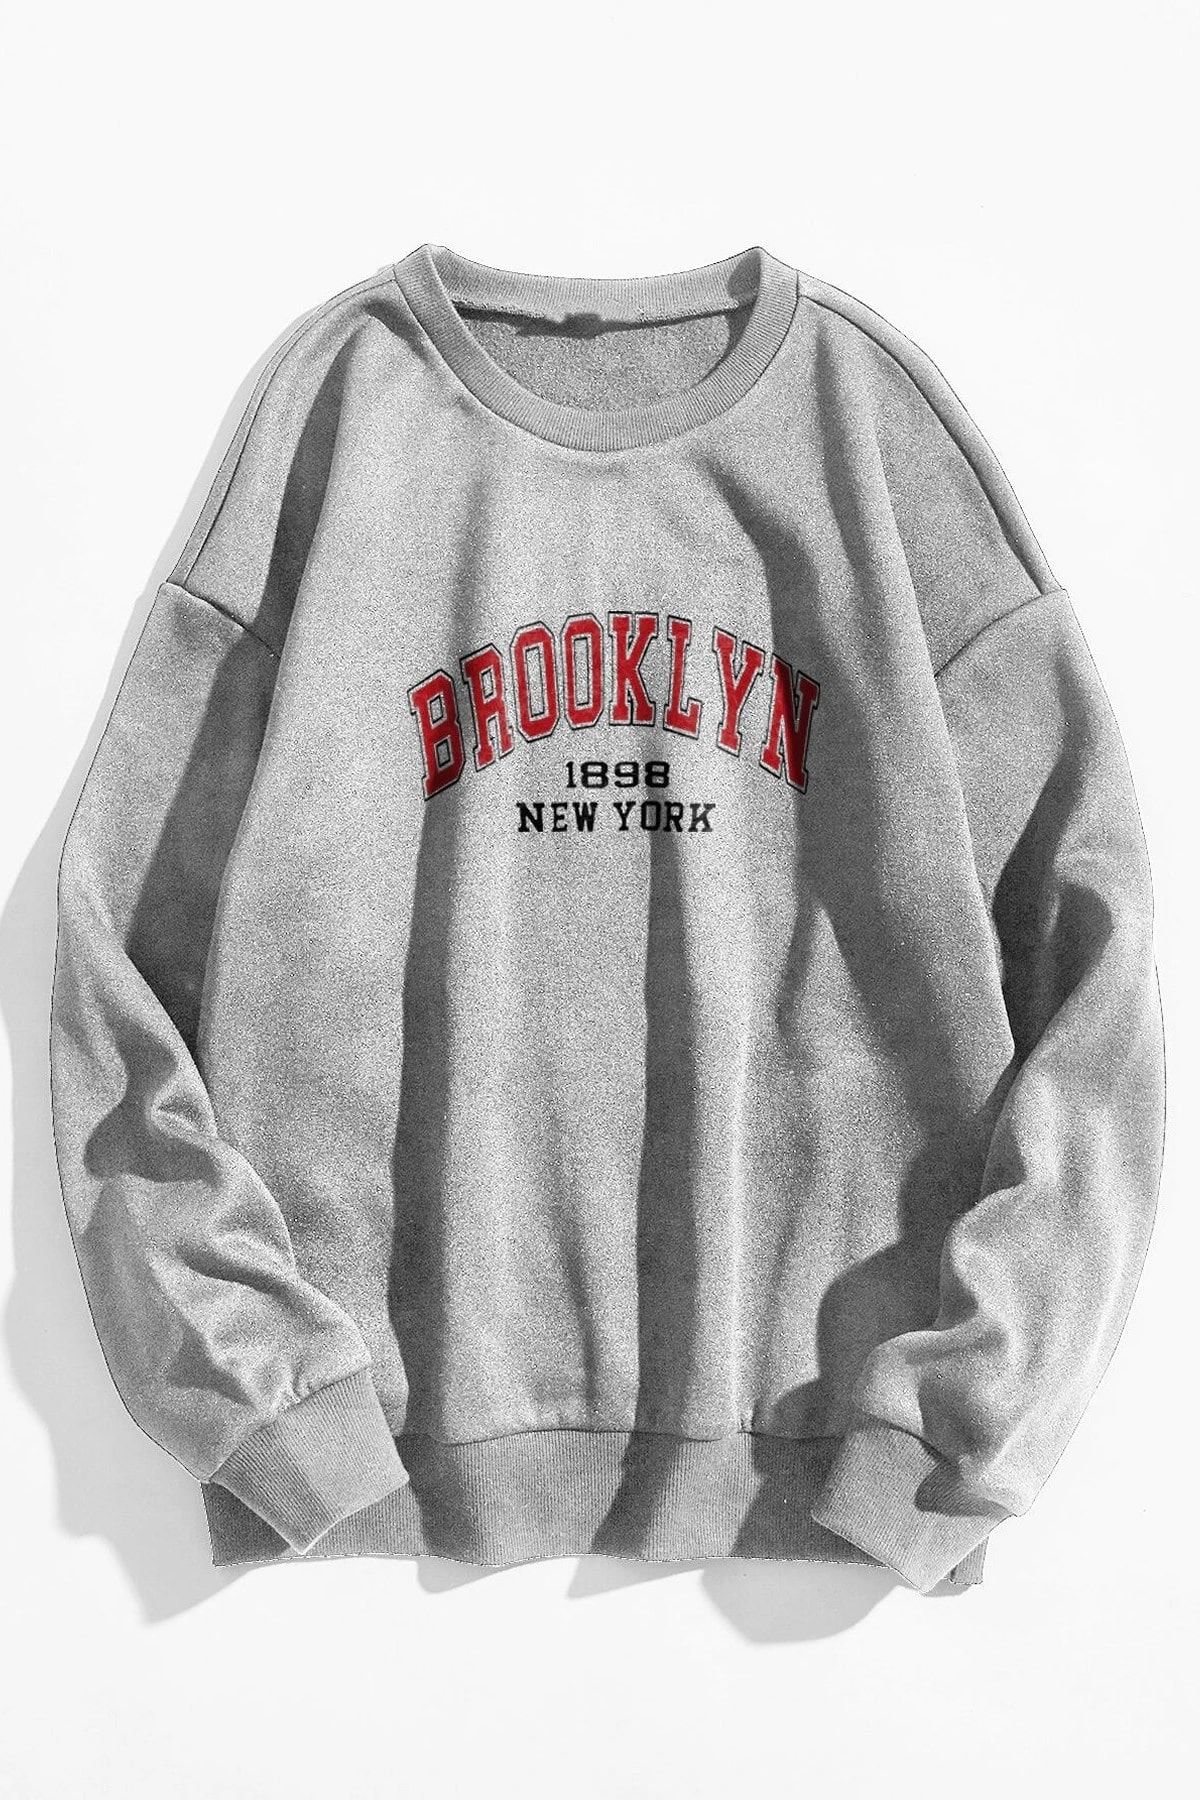 MODAGEN Unisex Gri Oversize Kırmızı Brooklyn Baskılı Sweatshirt